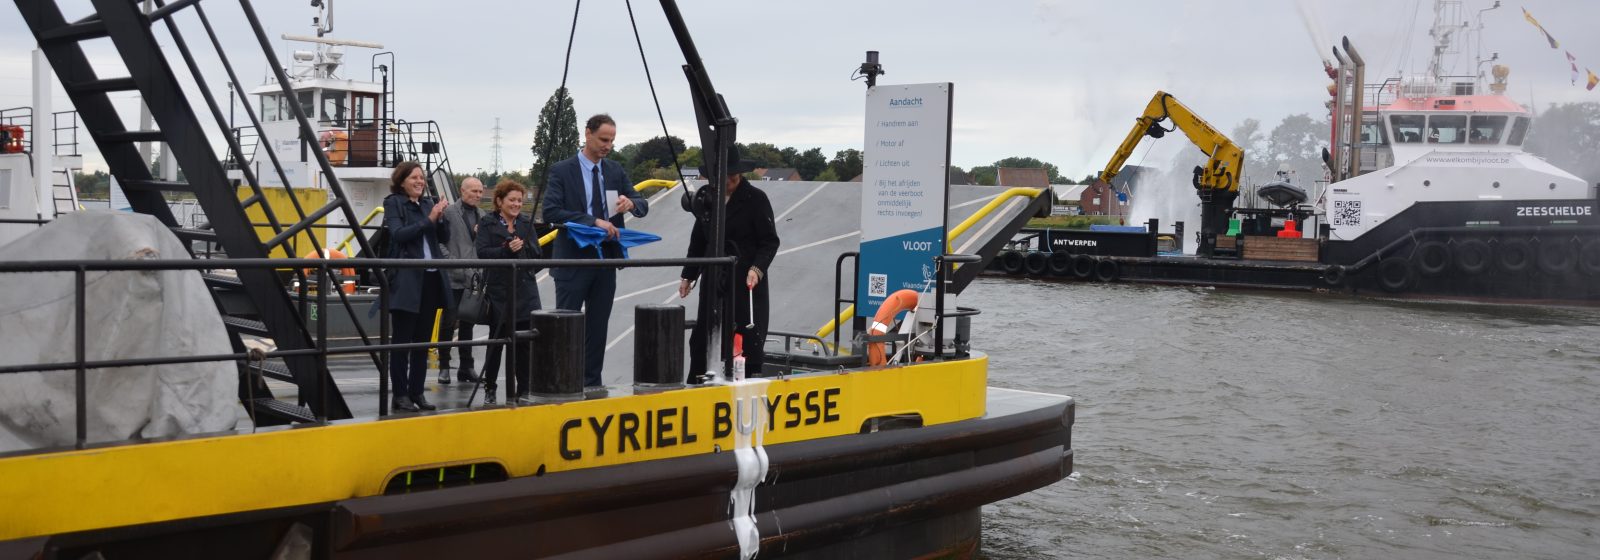 Inhuldiging nieuwe veerboot Cyriel Buysse op kanaal Gent-Terneuzen